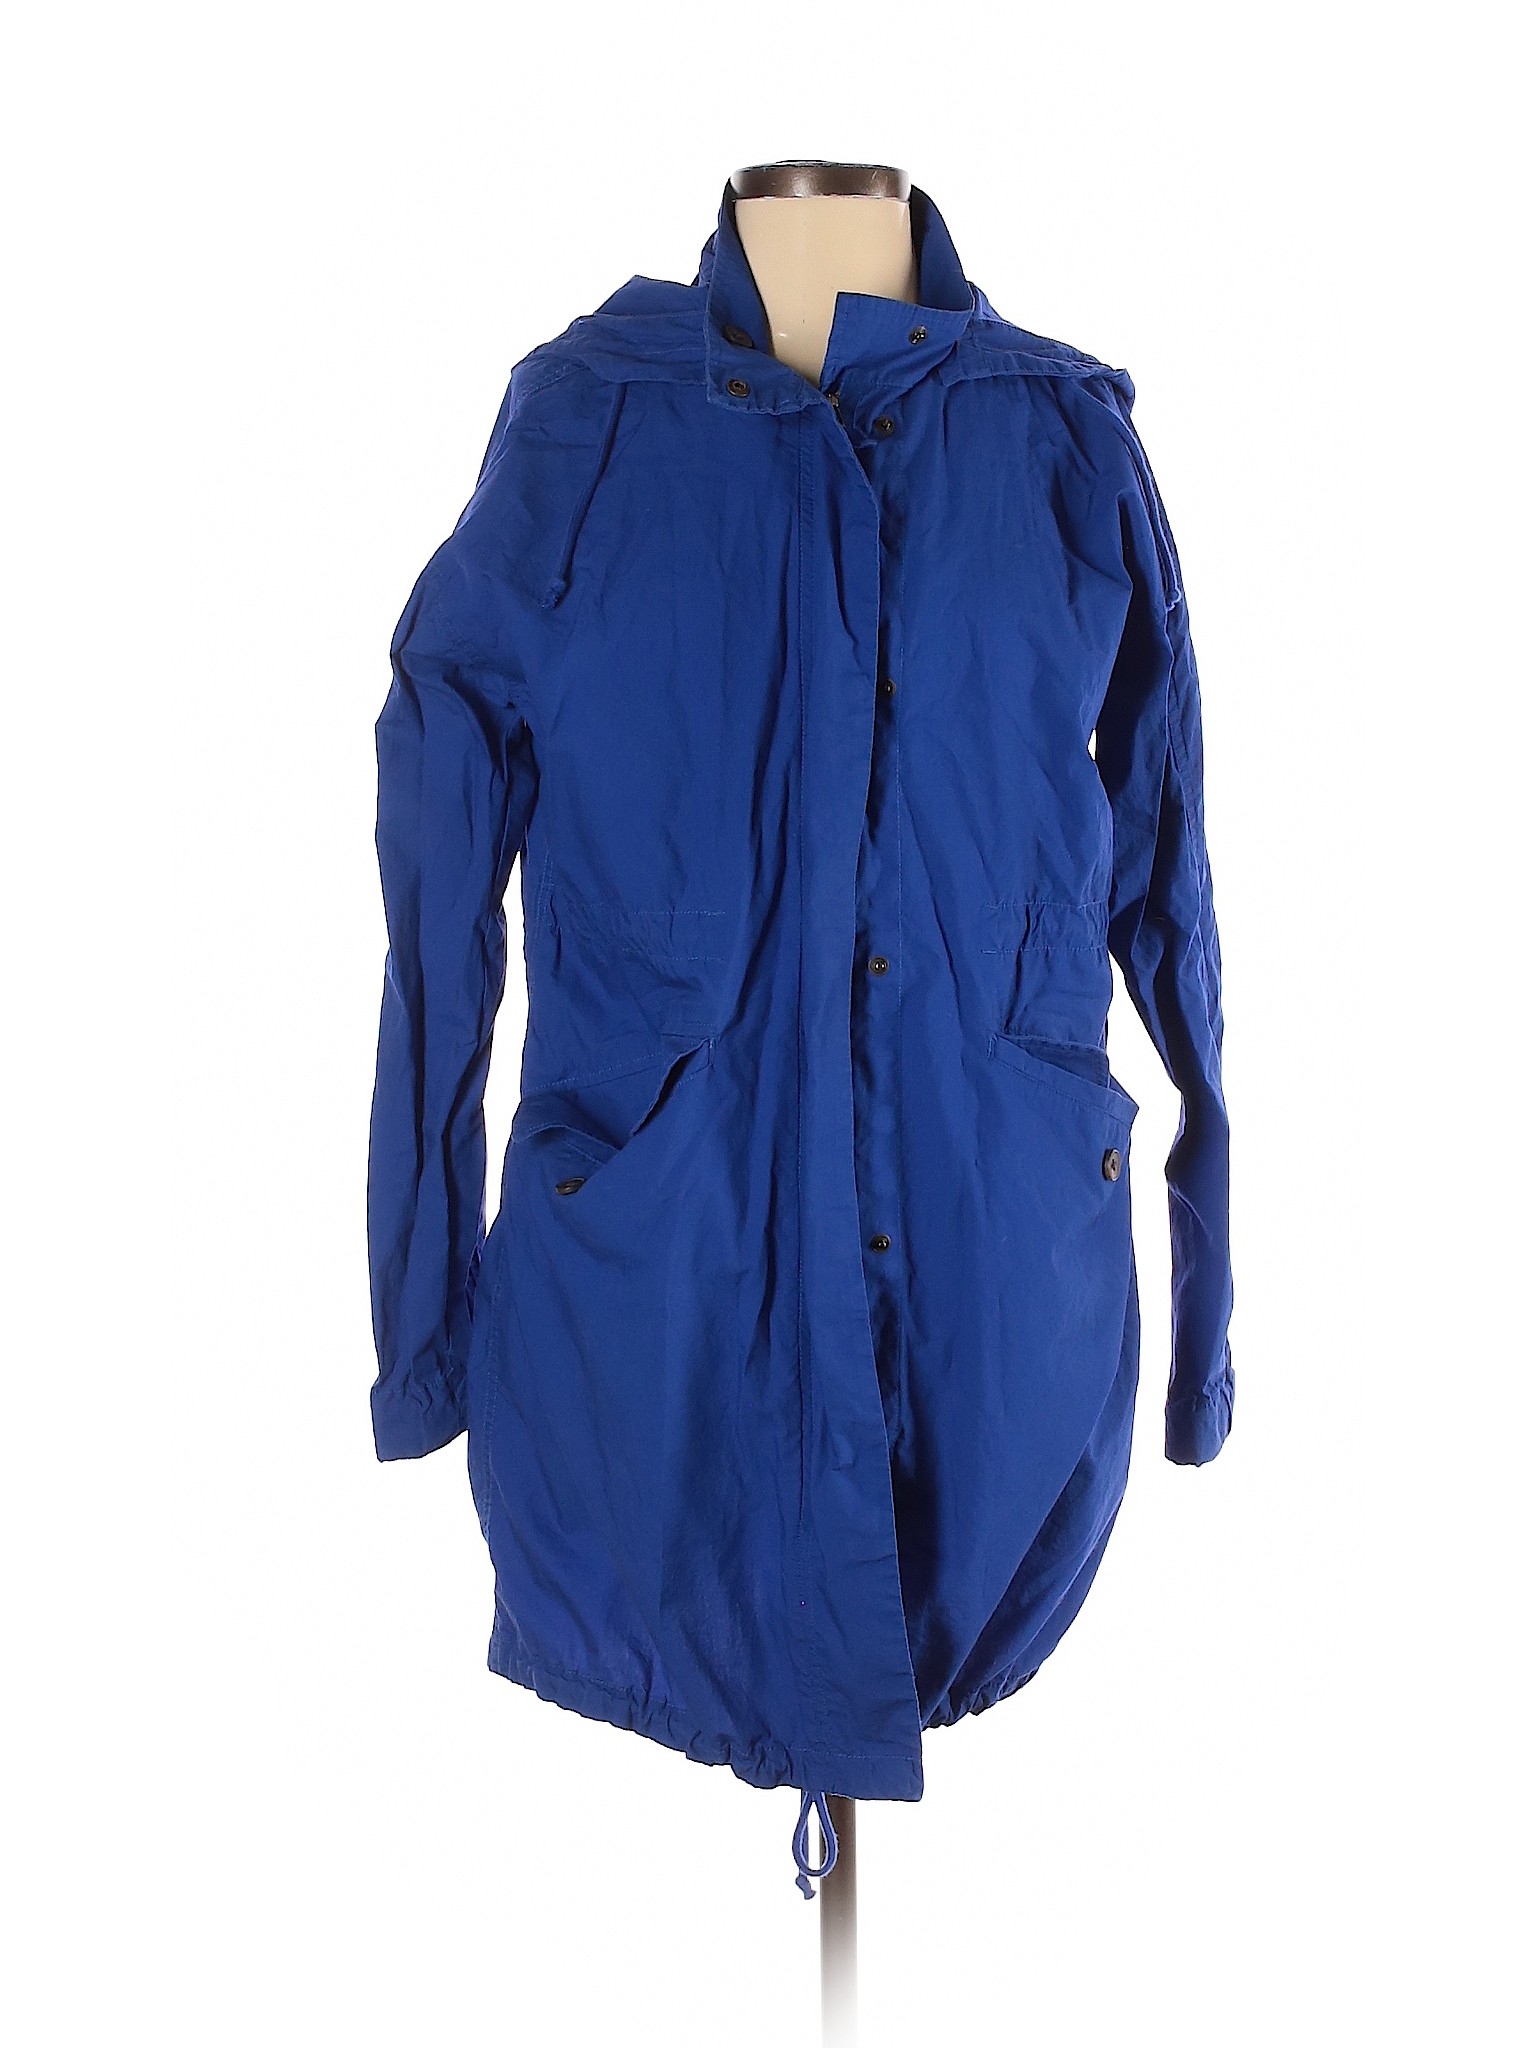 Lands' End Women Blue Jacket XS | eBay